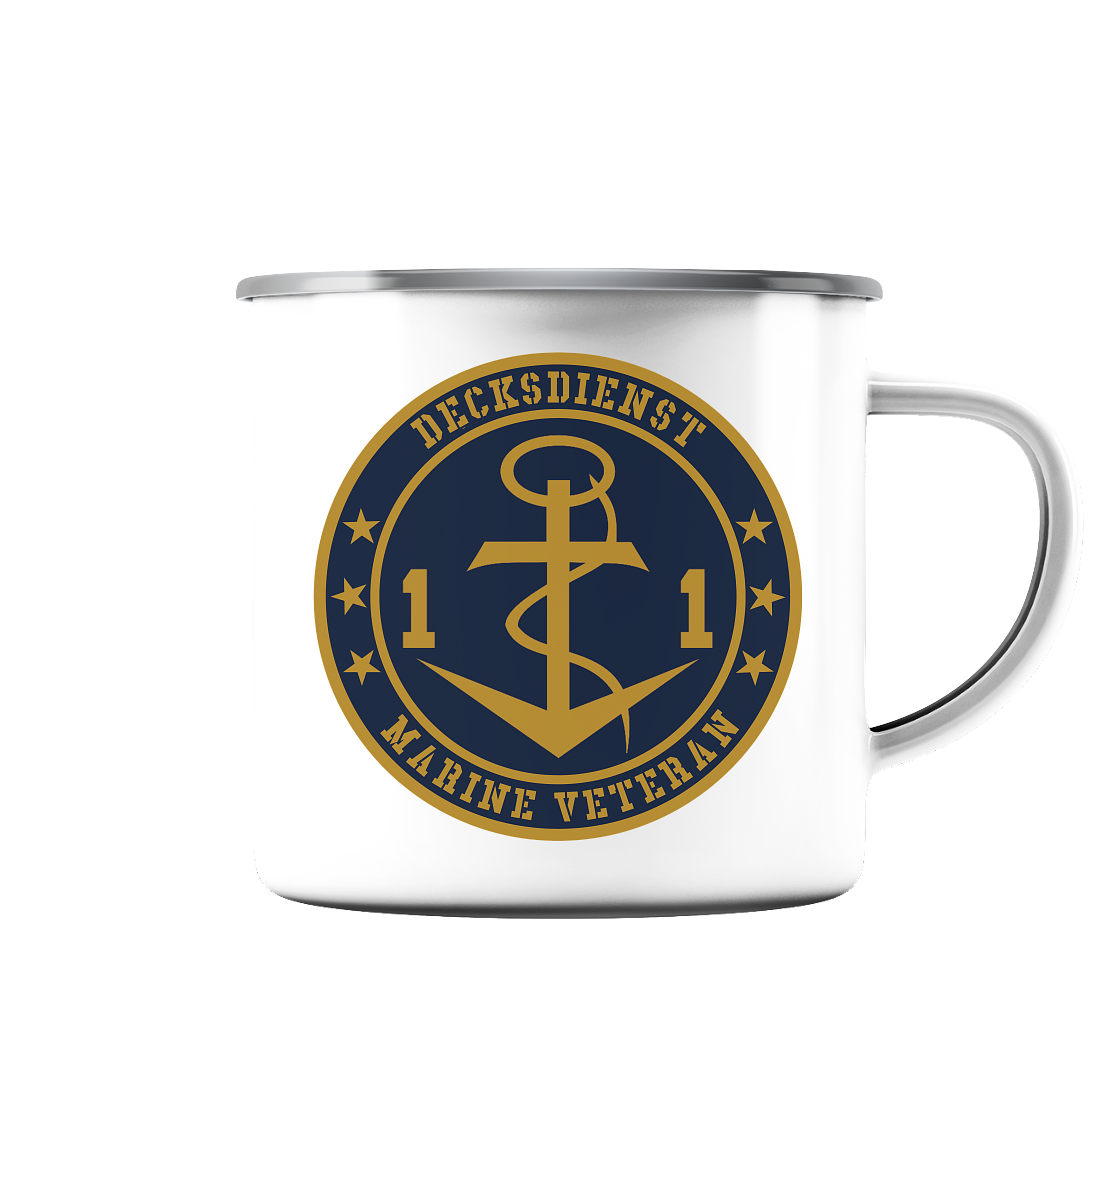 Marine Veteran 11er DECKSDIENST - Emaille Tasse (Silber)